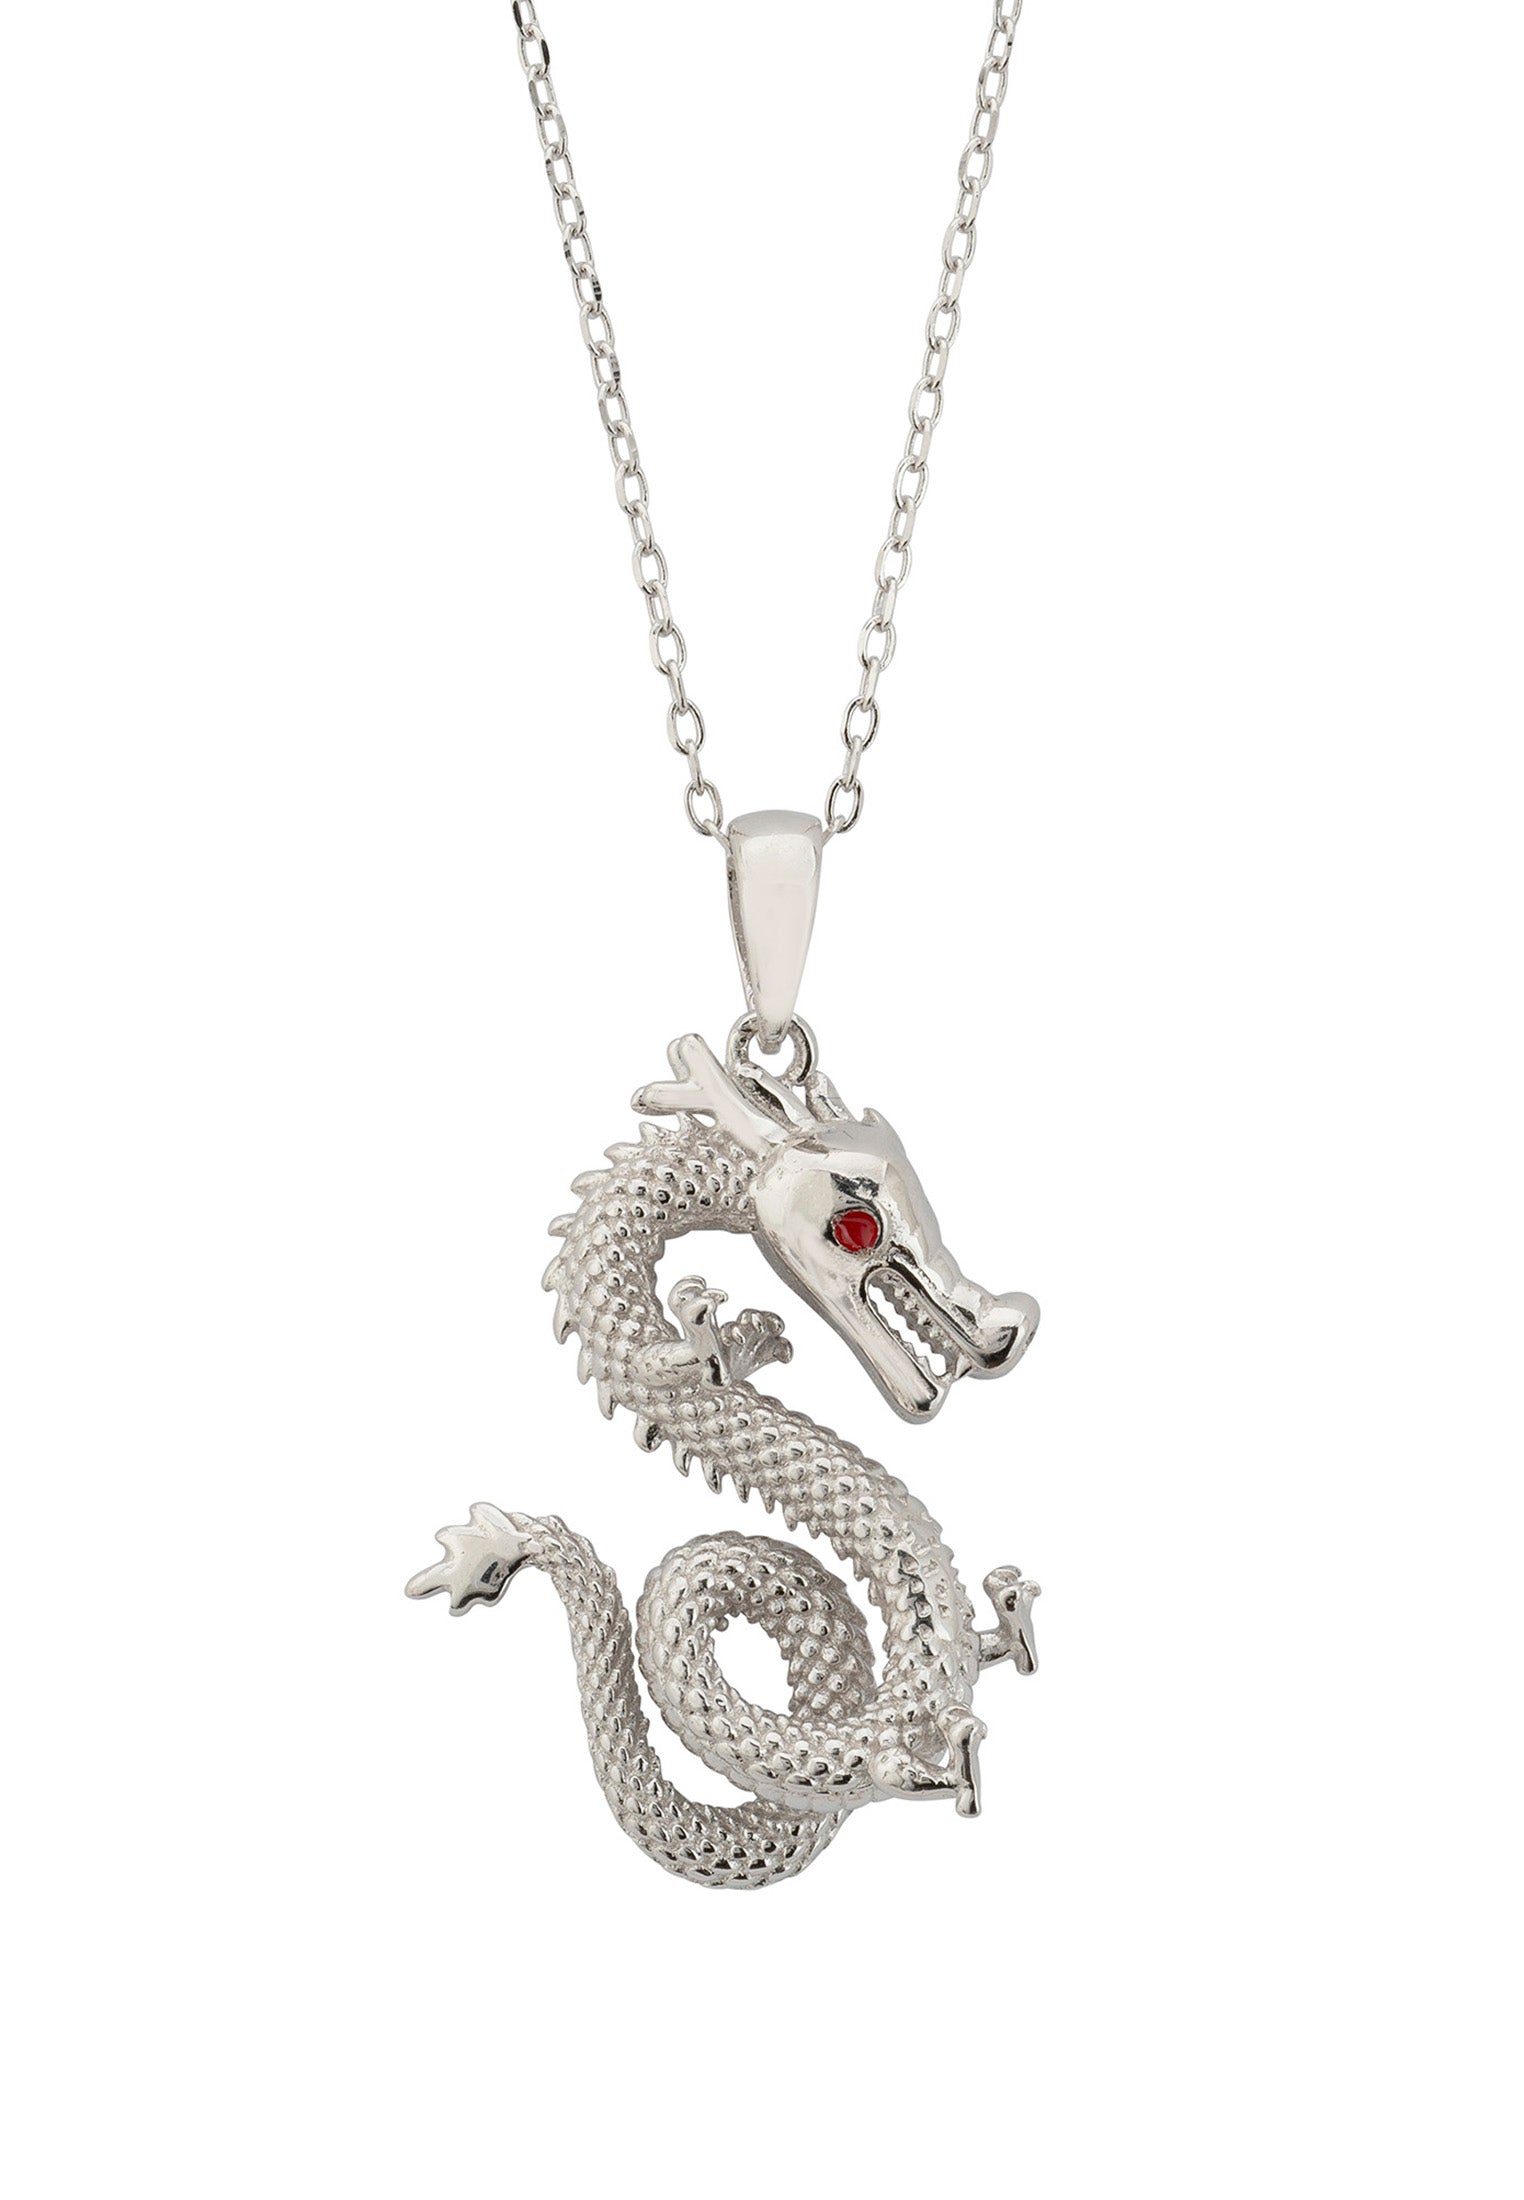 Enter The Dragon Pendant Necklace Silver